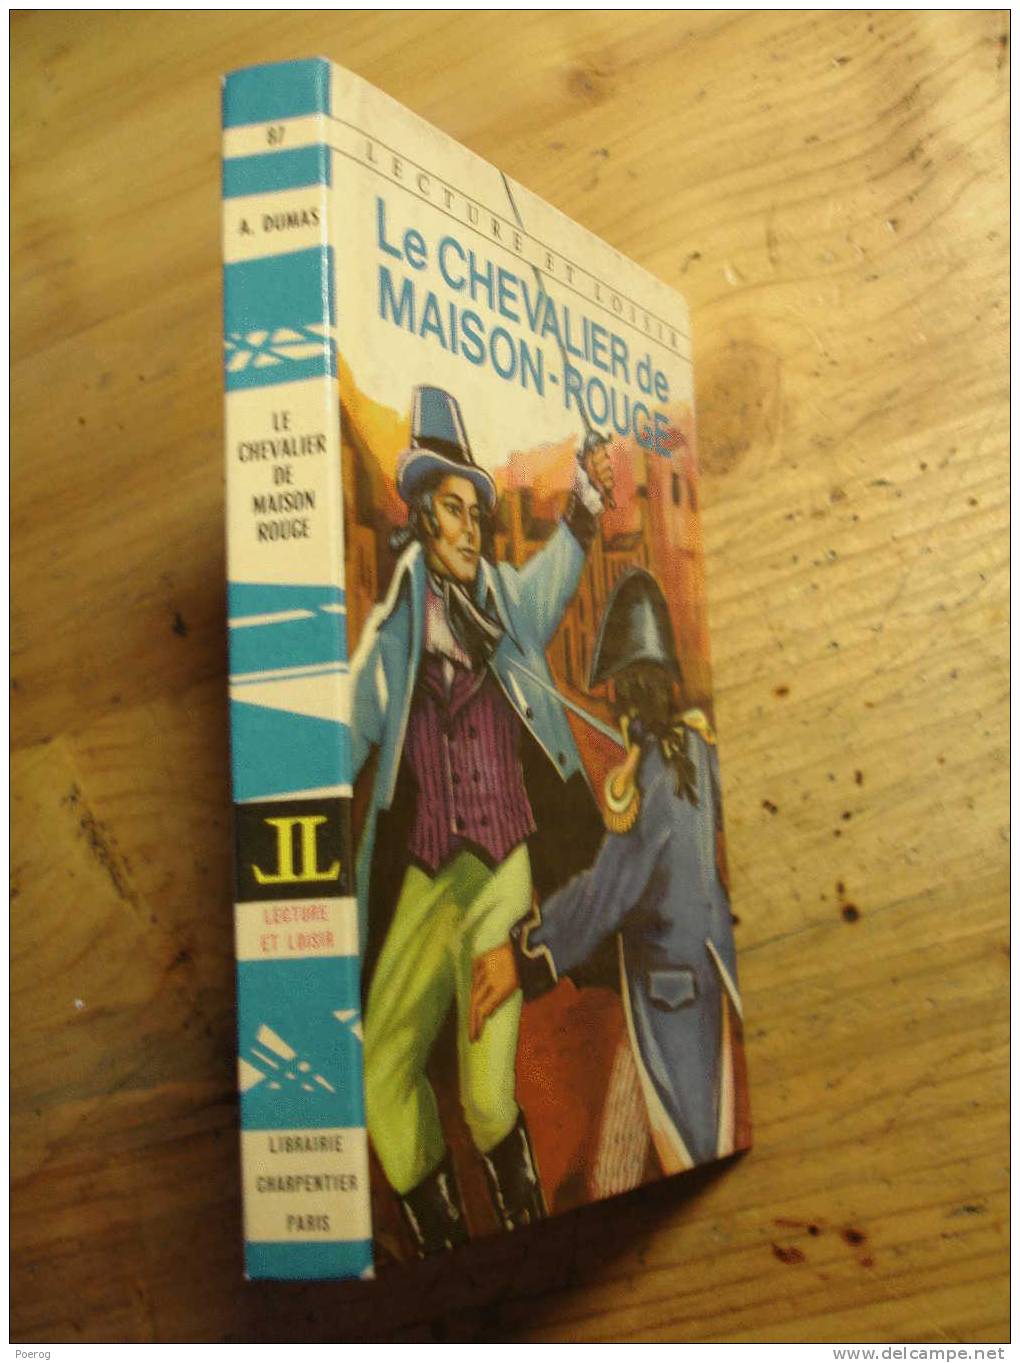 LE CHEVALIER DE MAISON ROUGE - ALEXANDRE DUMAS - Illustré Par J. Gilly  - 1966 - Lecture Et Loisir N°87 - CHARPENTIER - Collection Lectures Et Loisirs